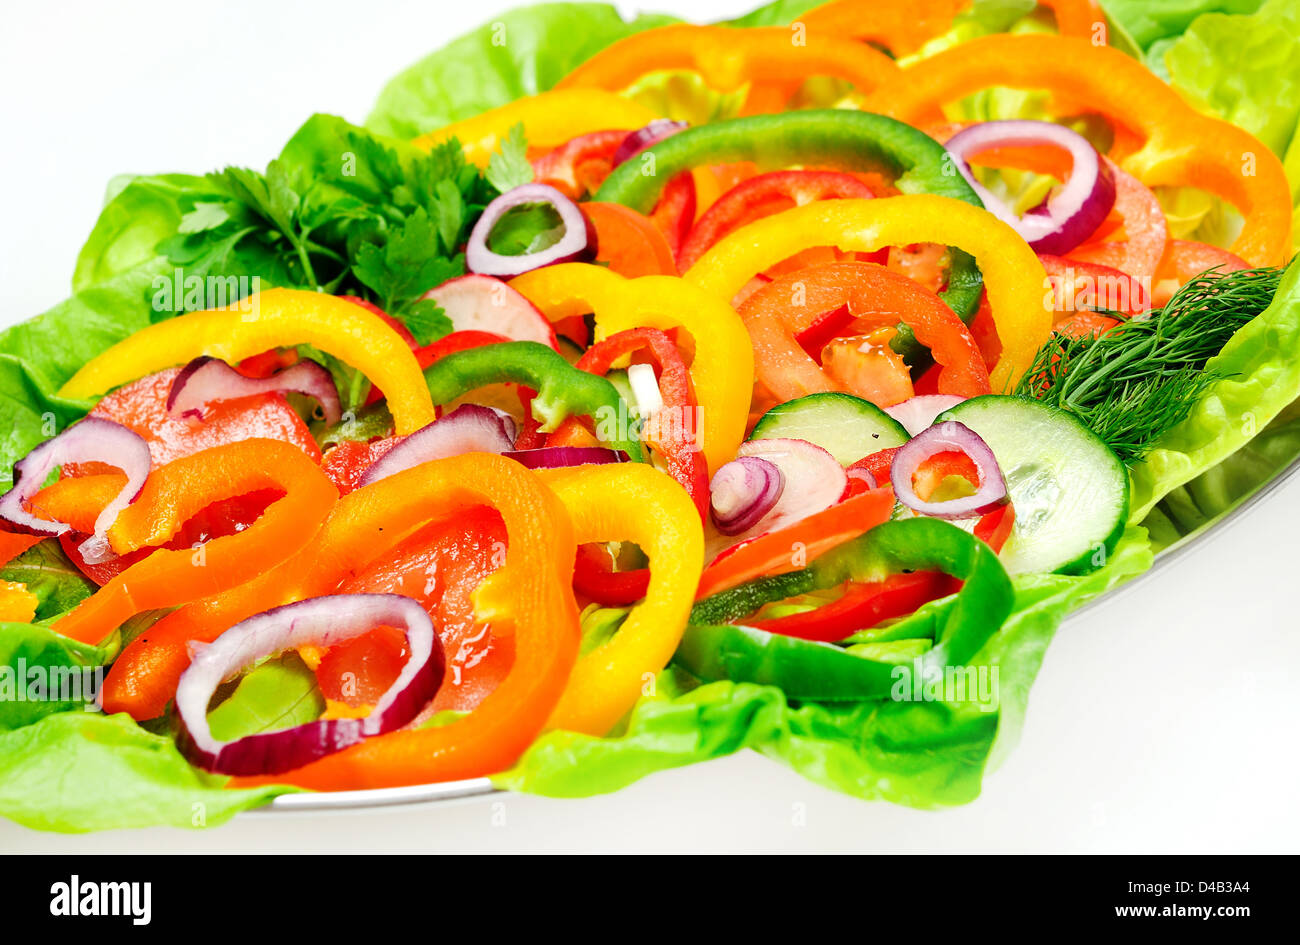 Plaque avec salade de légumes en rondelles Banque D'Images